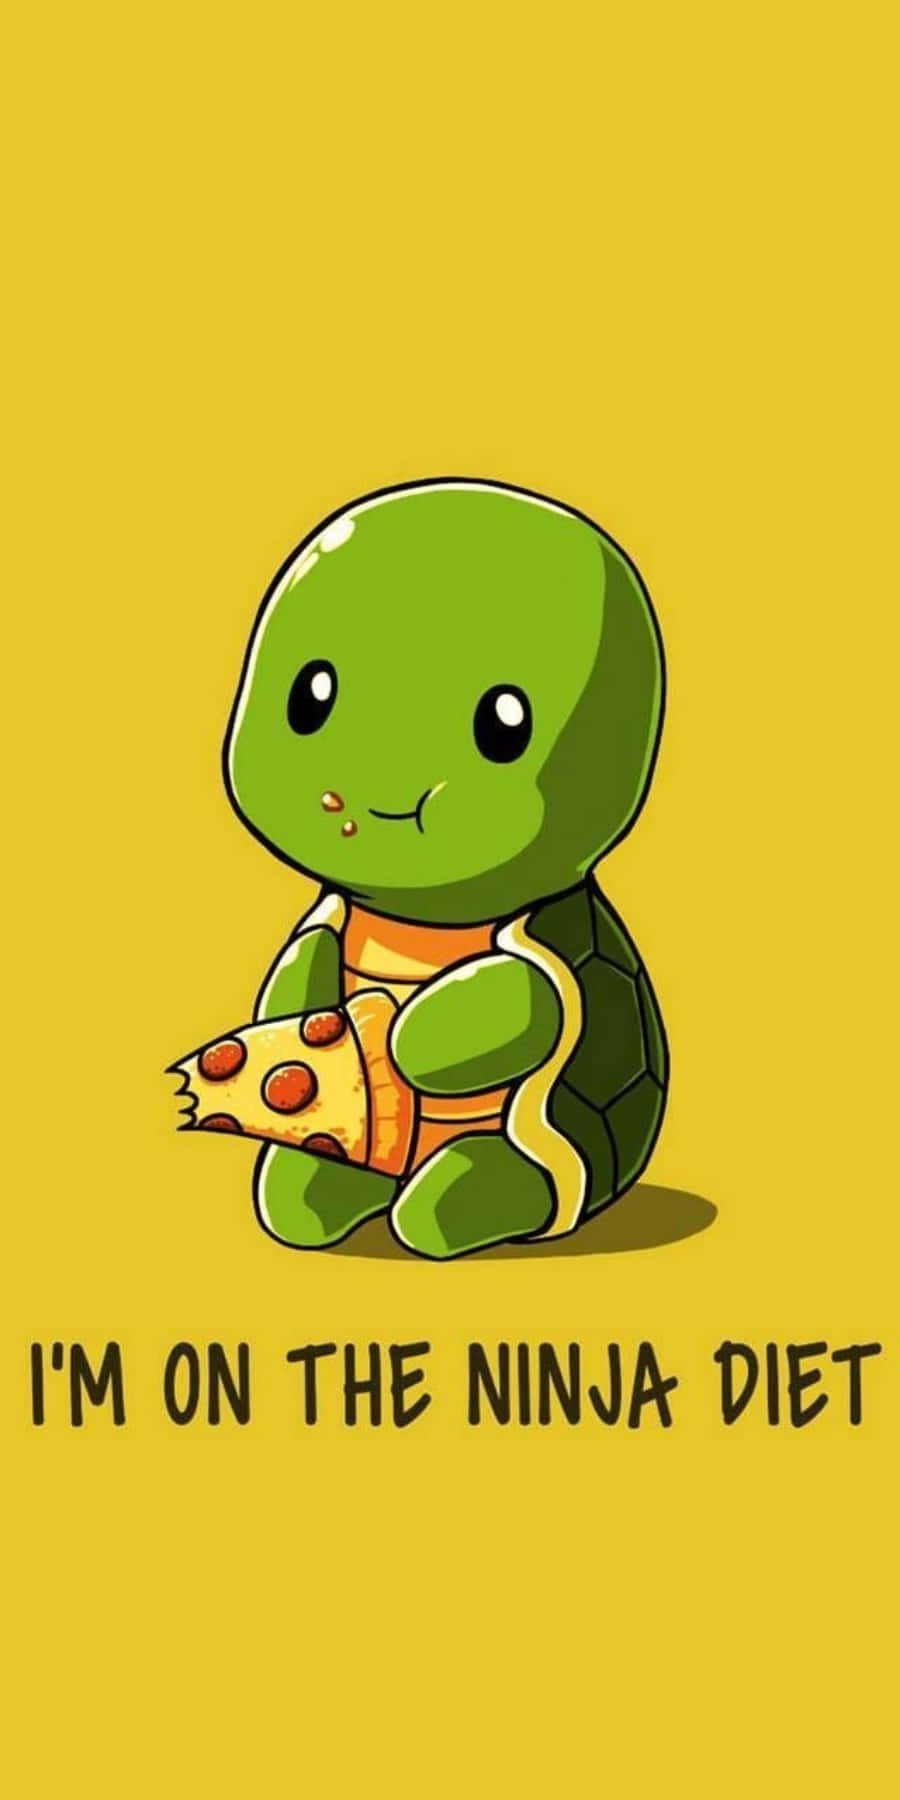 Lustigeschildkrötenbilder Pizza